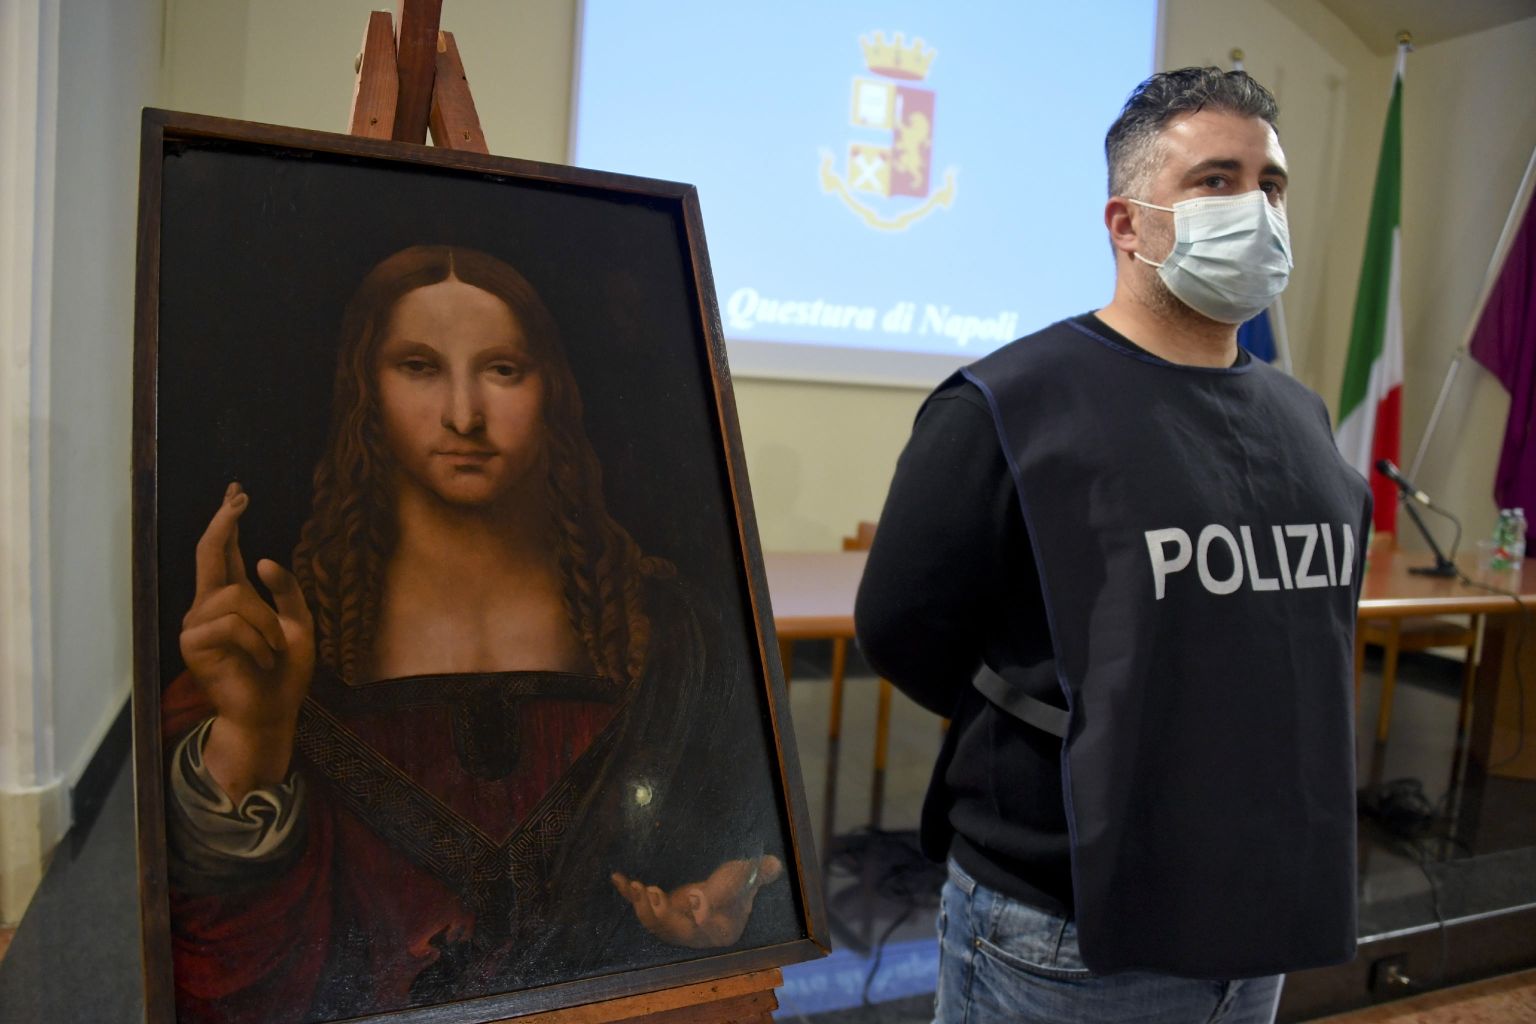 Itaalia politsei kultuuriväärtuste varguse osakonna uurija näitamas meediale Leonardo da Vinci maali «Salvator mundi» (Maailma päästja) koopiat, mis leiti ühest Napoli korterist